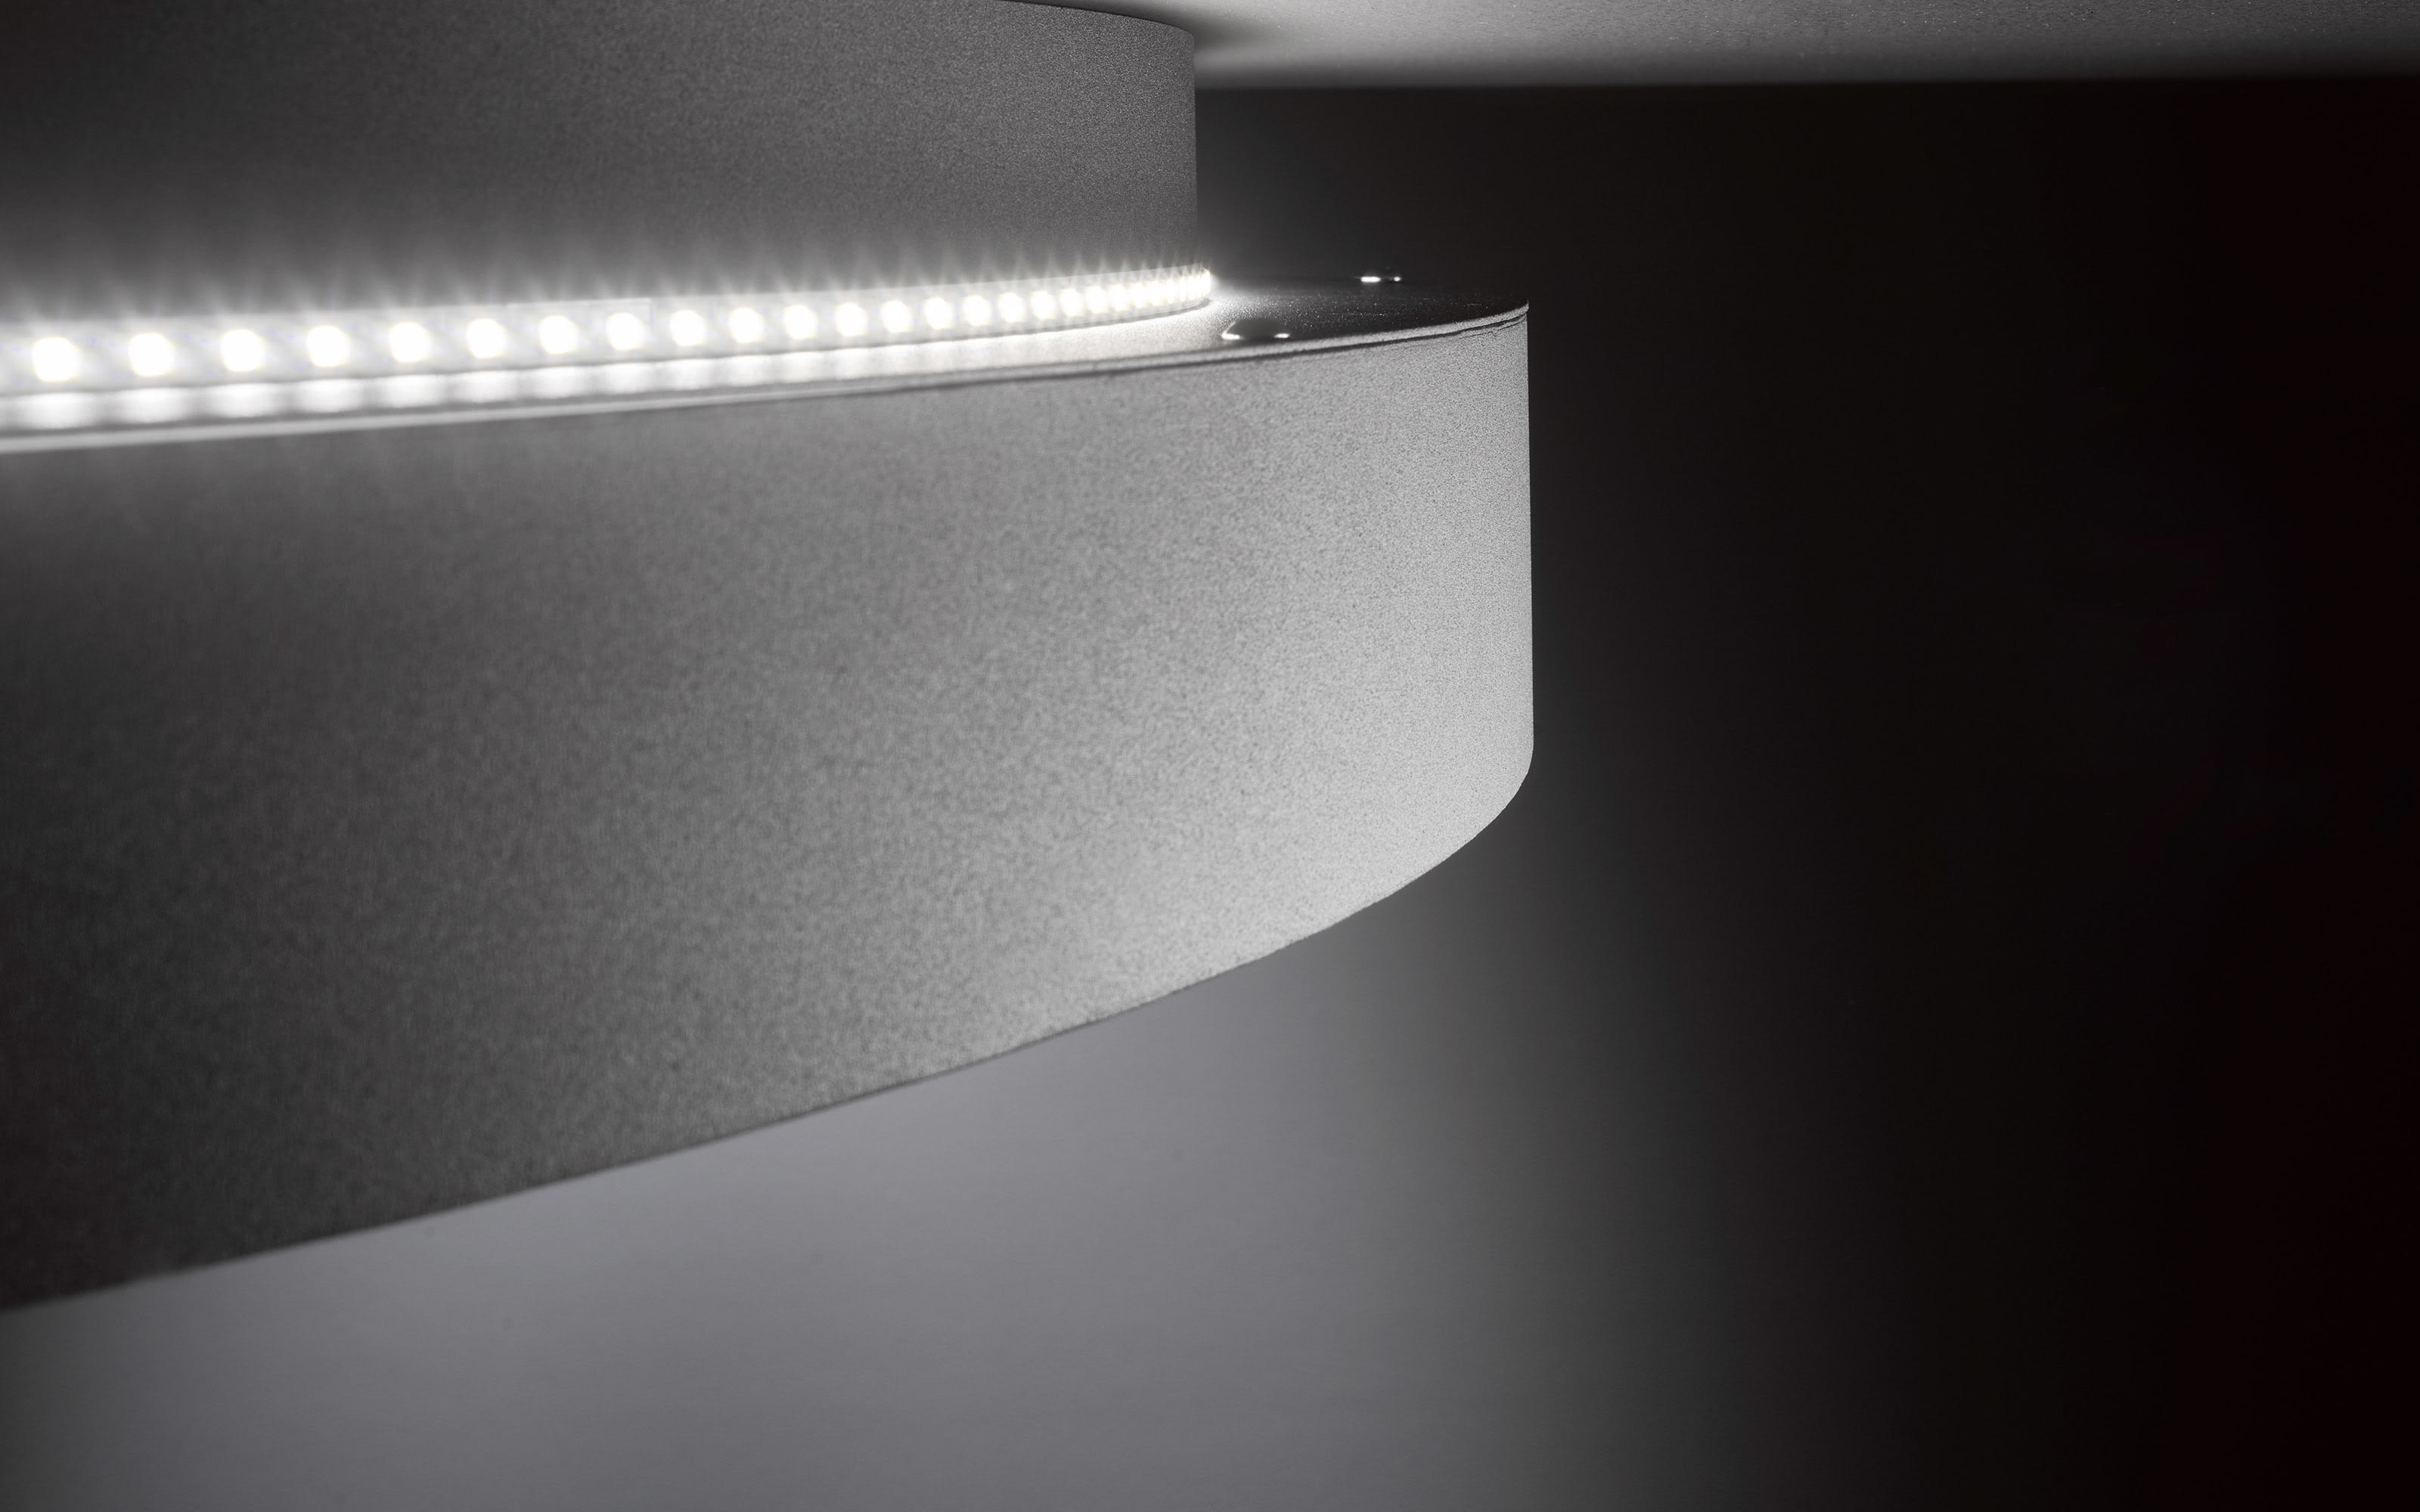 LED-Deckenleuchte Shay mit Backlight in dunkelgrau, 45 cm